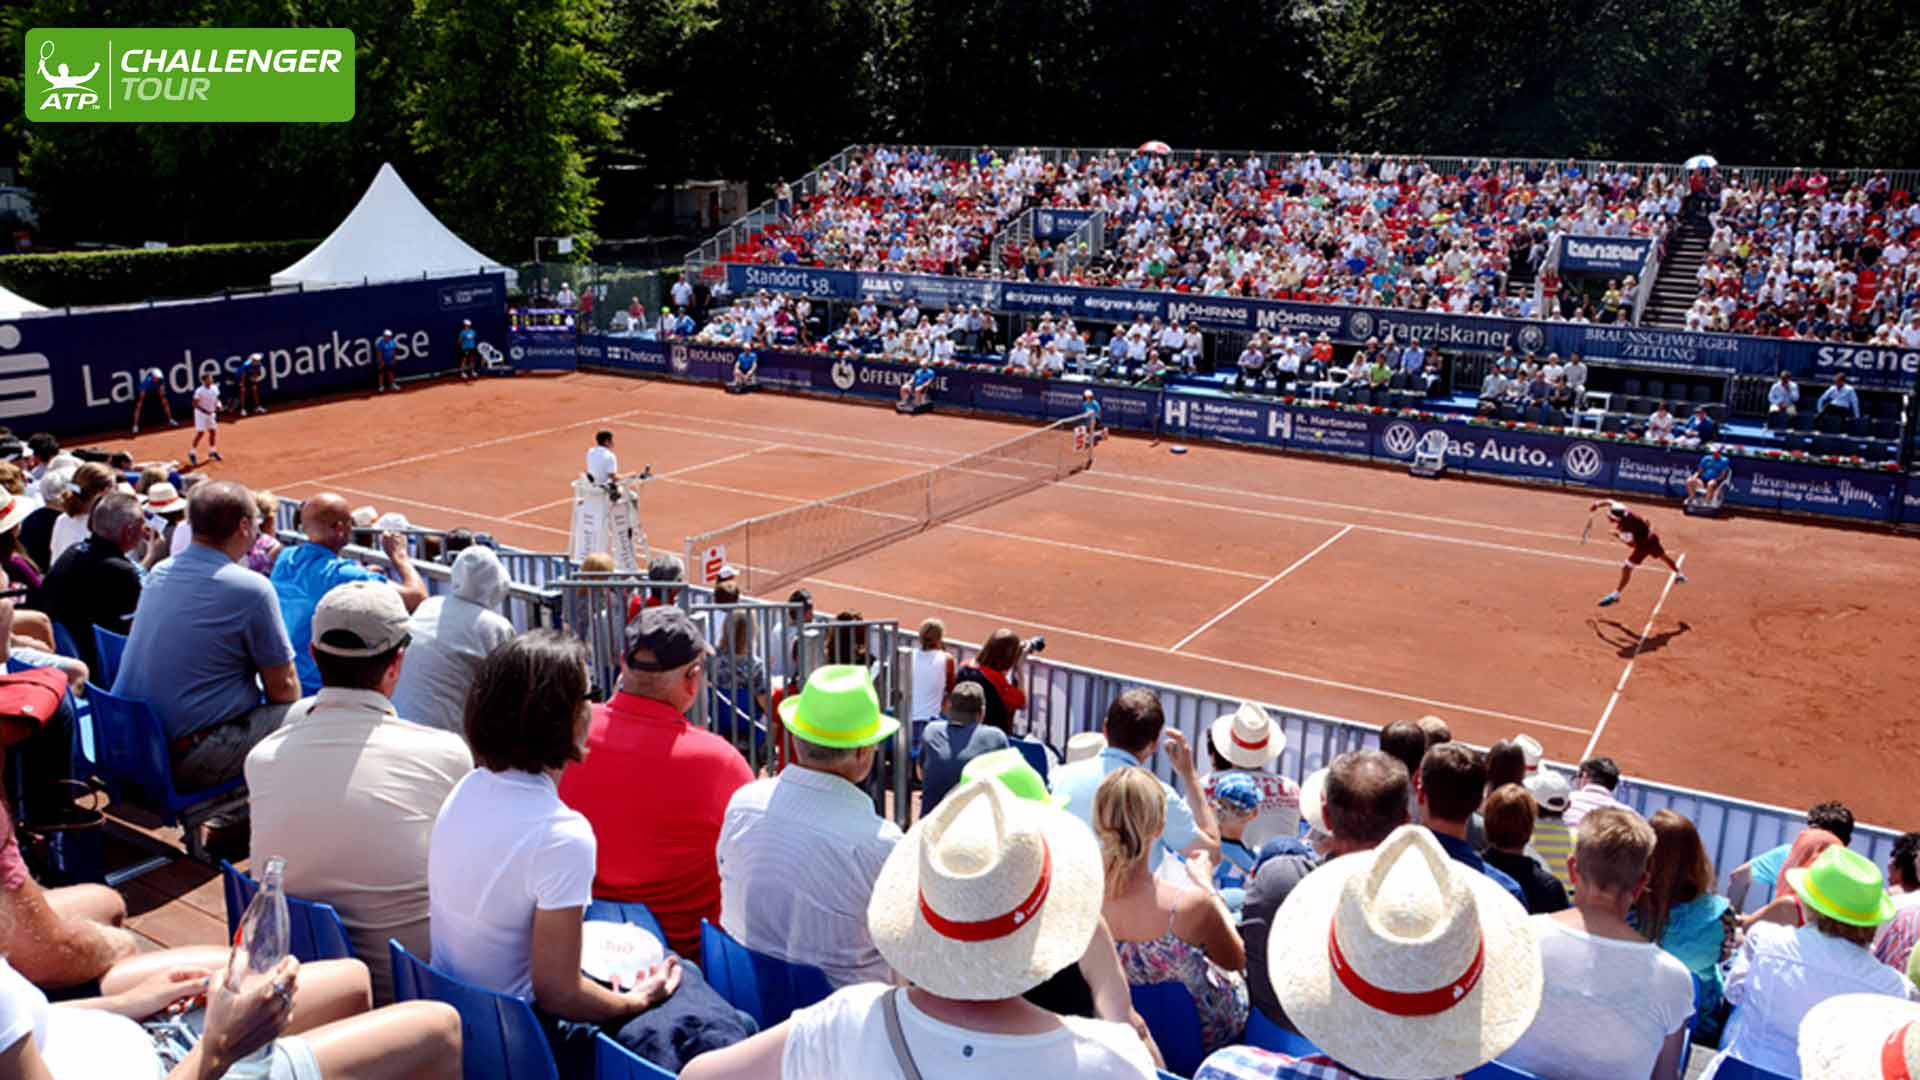 Fans enjoy the tennis in Braunschweig.